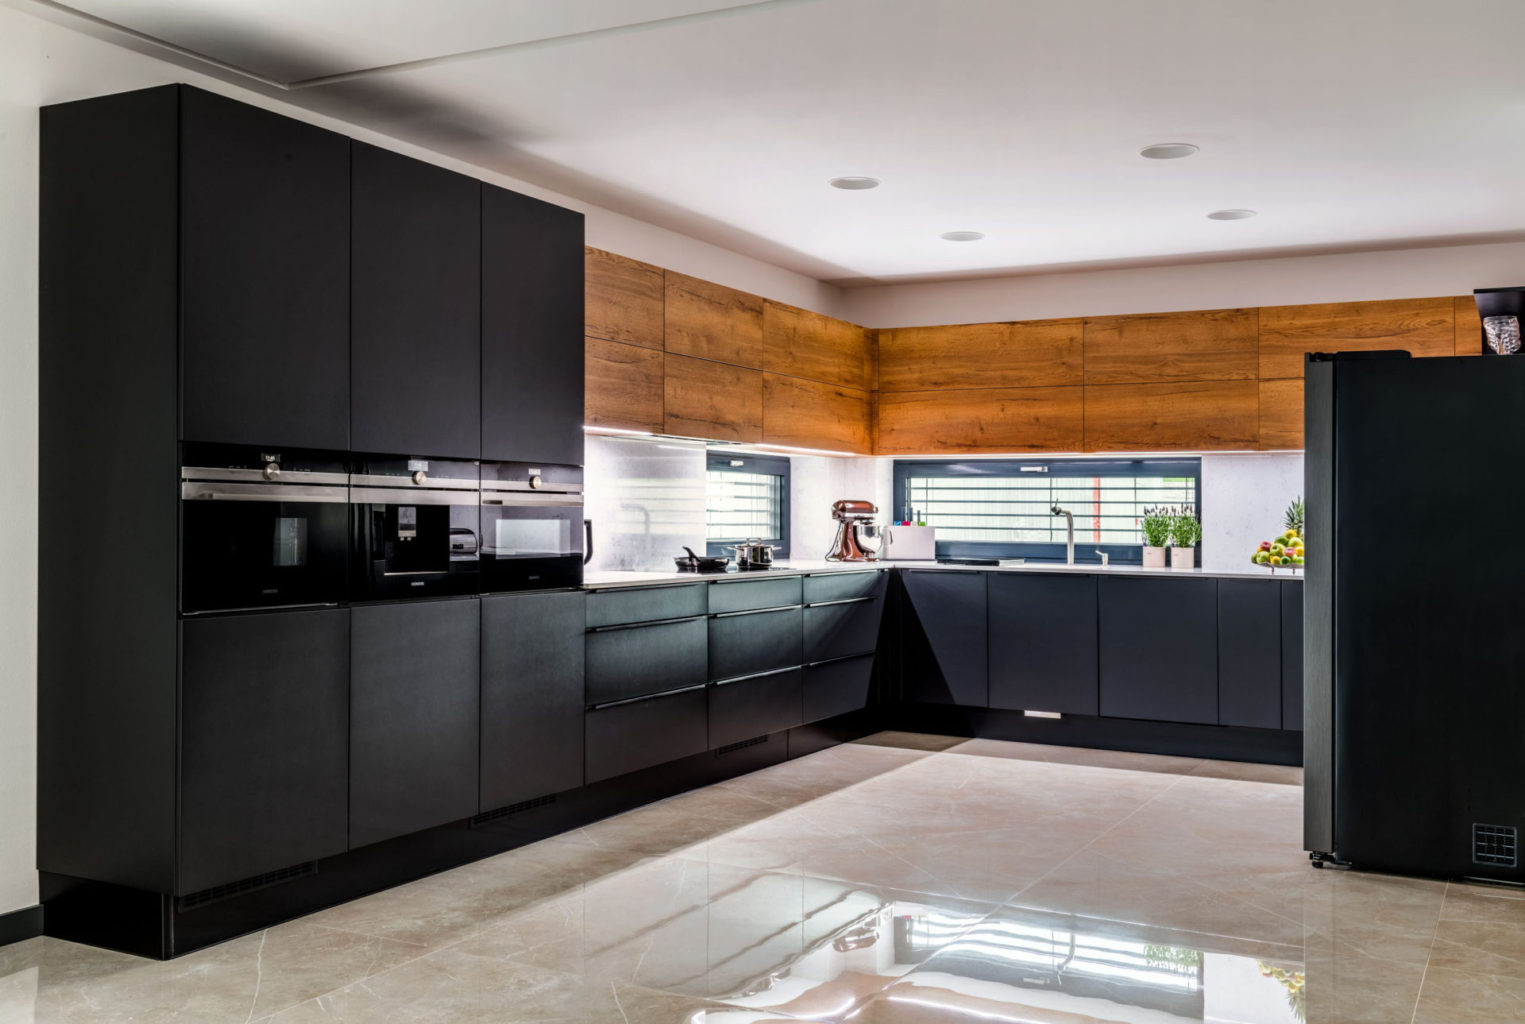 moderni cerna kuchyne, jednotna linie, jednoduchy design, cerna kombinace s laminem dekor dreva